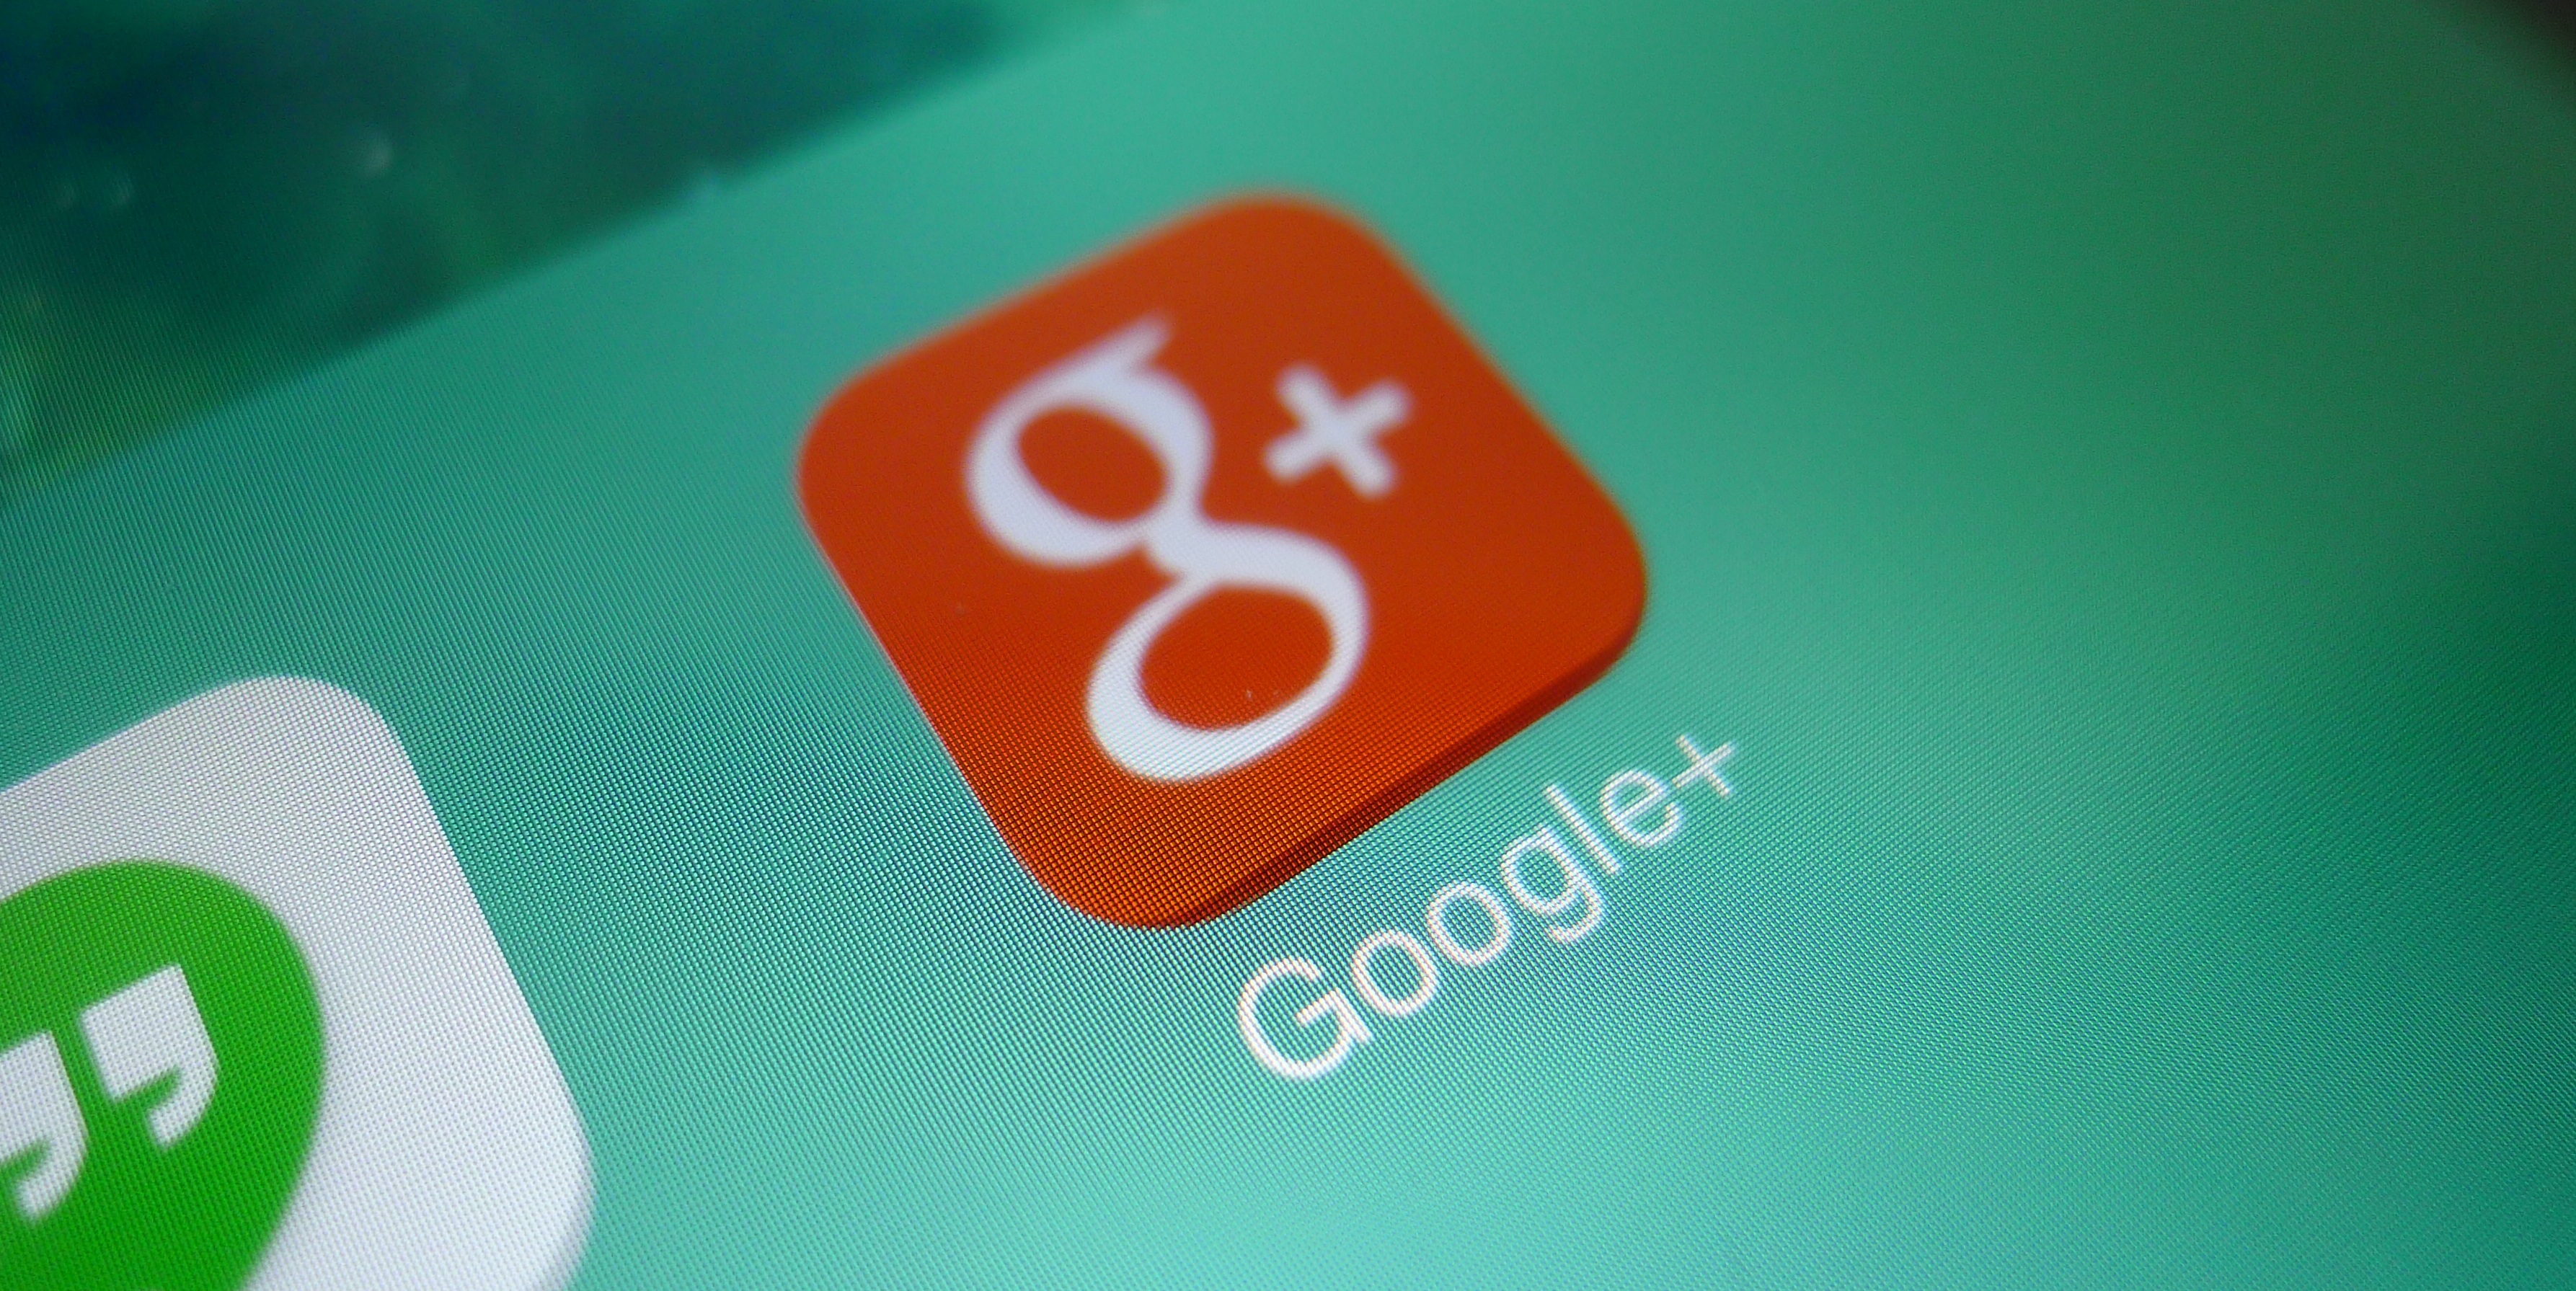 Hướng dẫn tạo page Google+ cho người mới bắt đầu